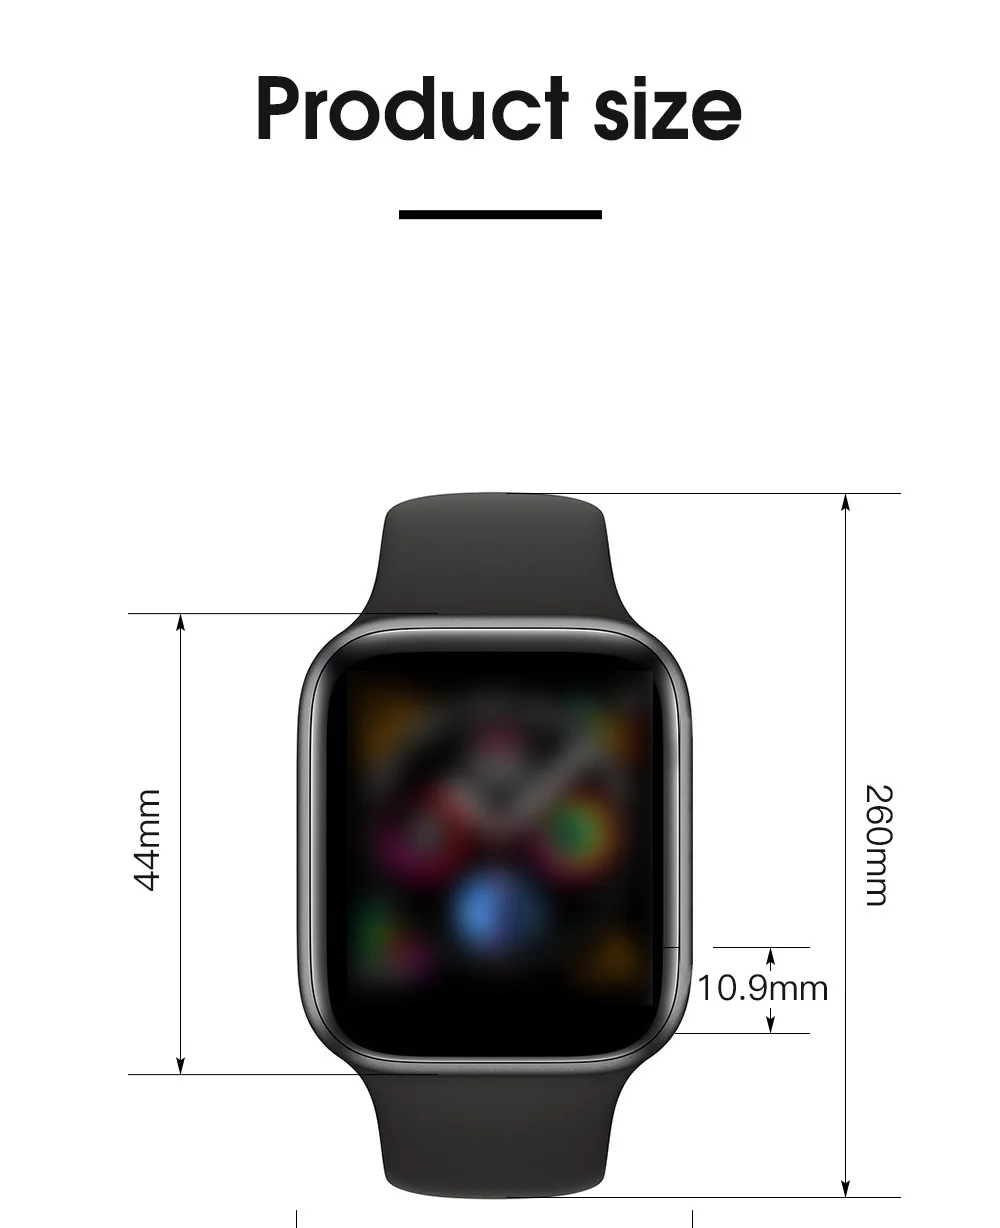 SONGKU IWO 8 дополнительный размерный ряд 44 мм часы 4 умные часы пульт дистанционного управления siri часы для apple iPhone Android телефон лучше, чем IWO 6, 7, 9, 10, 11